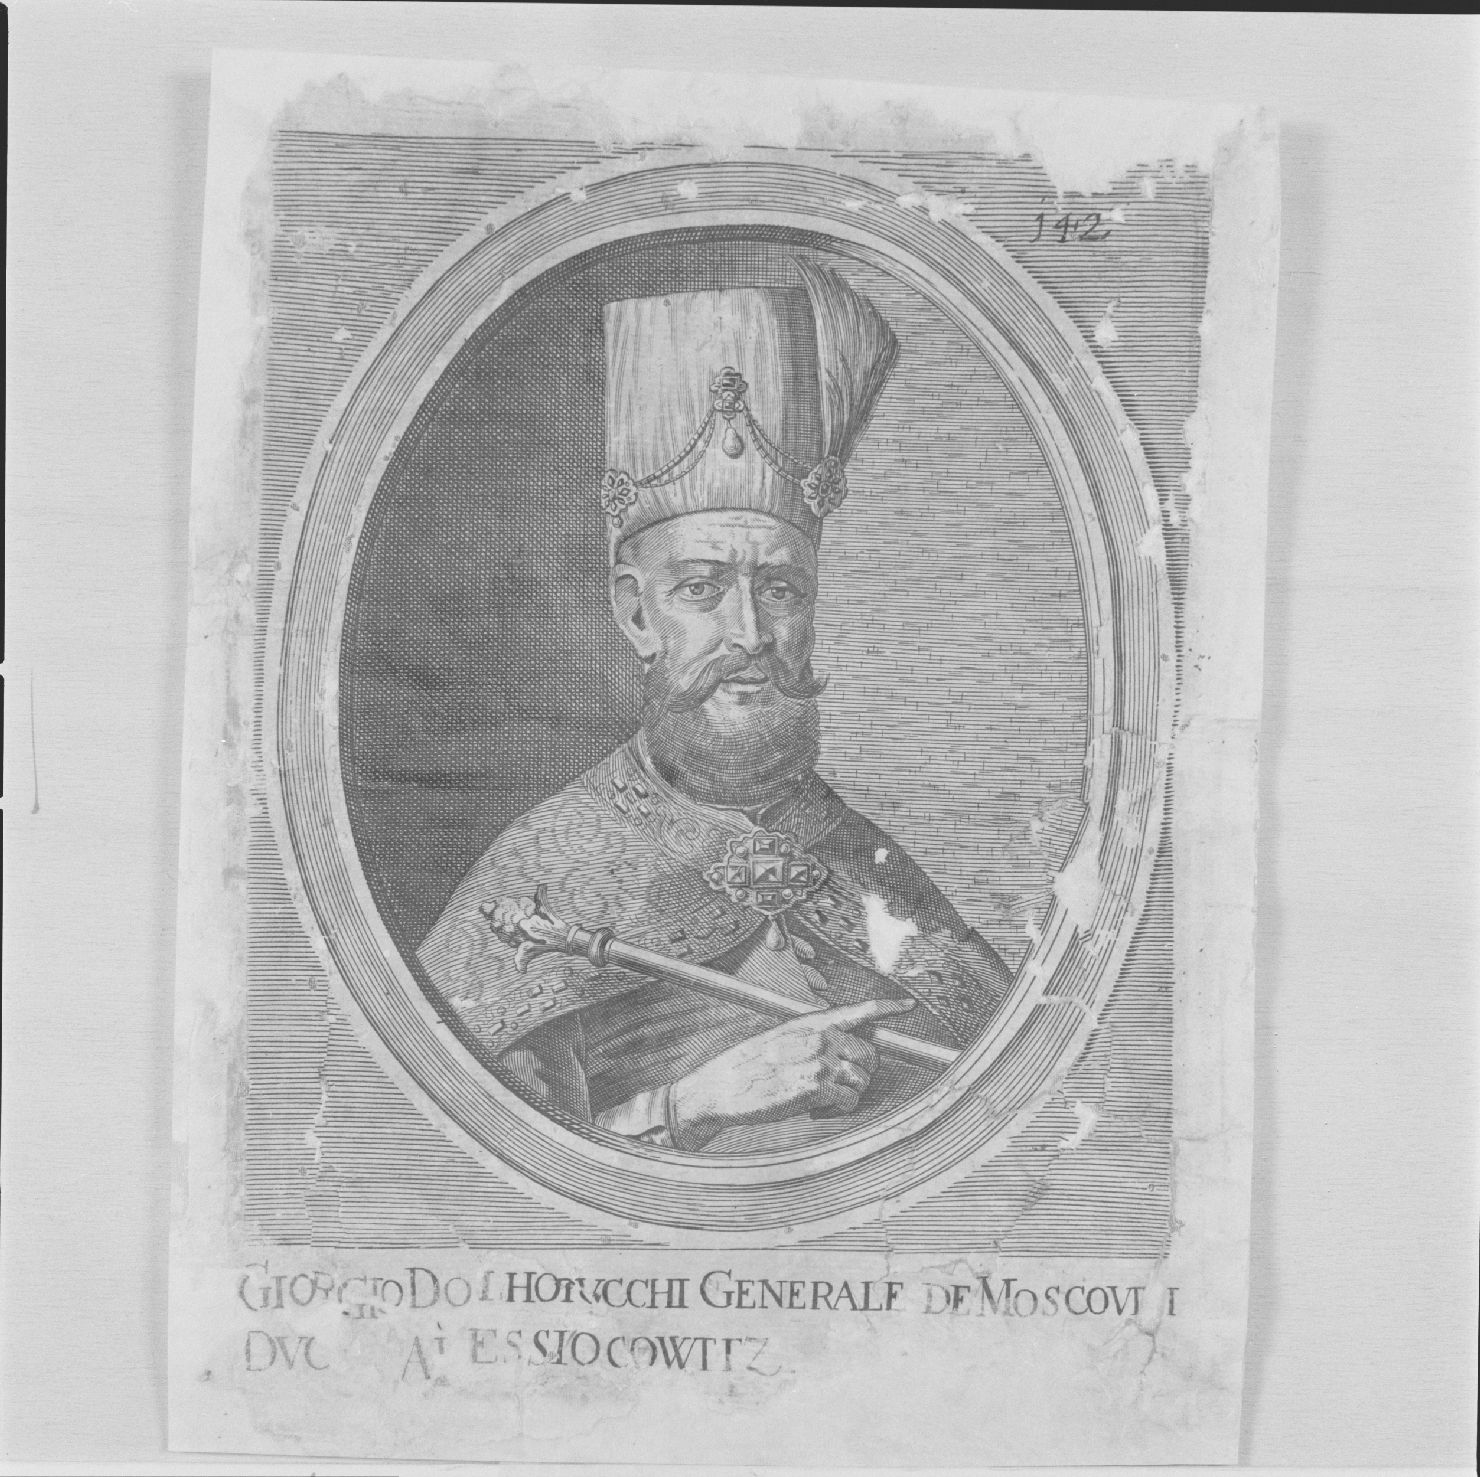 ritratto di Giorgio Dolhorucchi duca di Alessiocowitz (stampa) - ambito europeo, ambito europeo, ambito europeo (primo quarto sec. XVII)